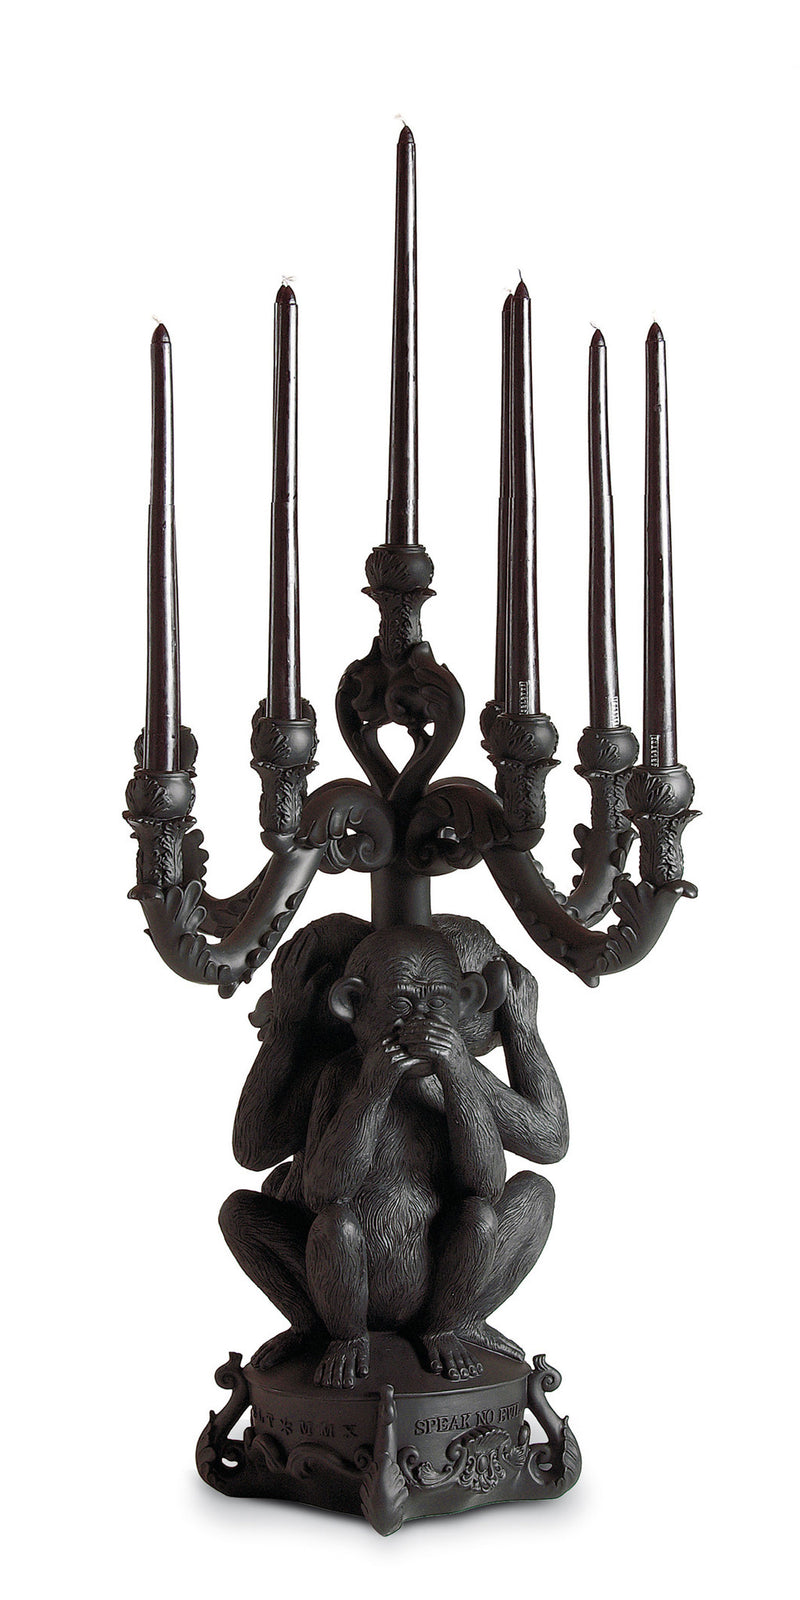 media image for giant burlesque black 3 monkeys chandelier design by seletti 1 234